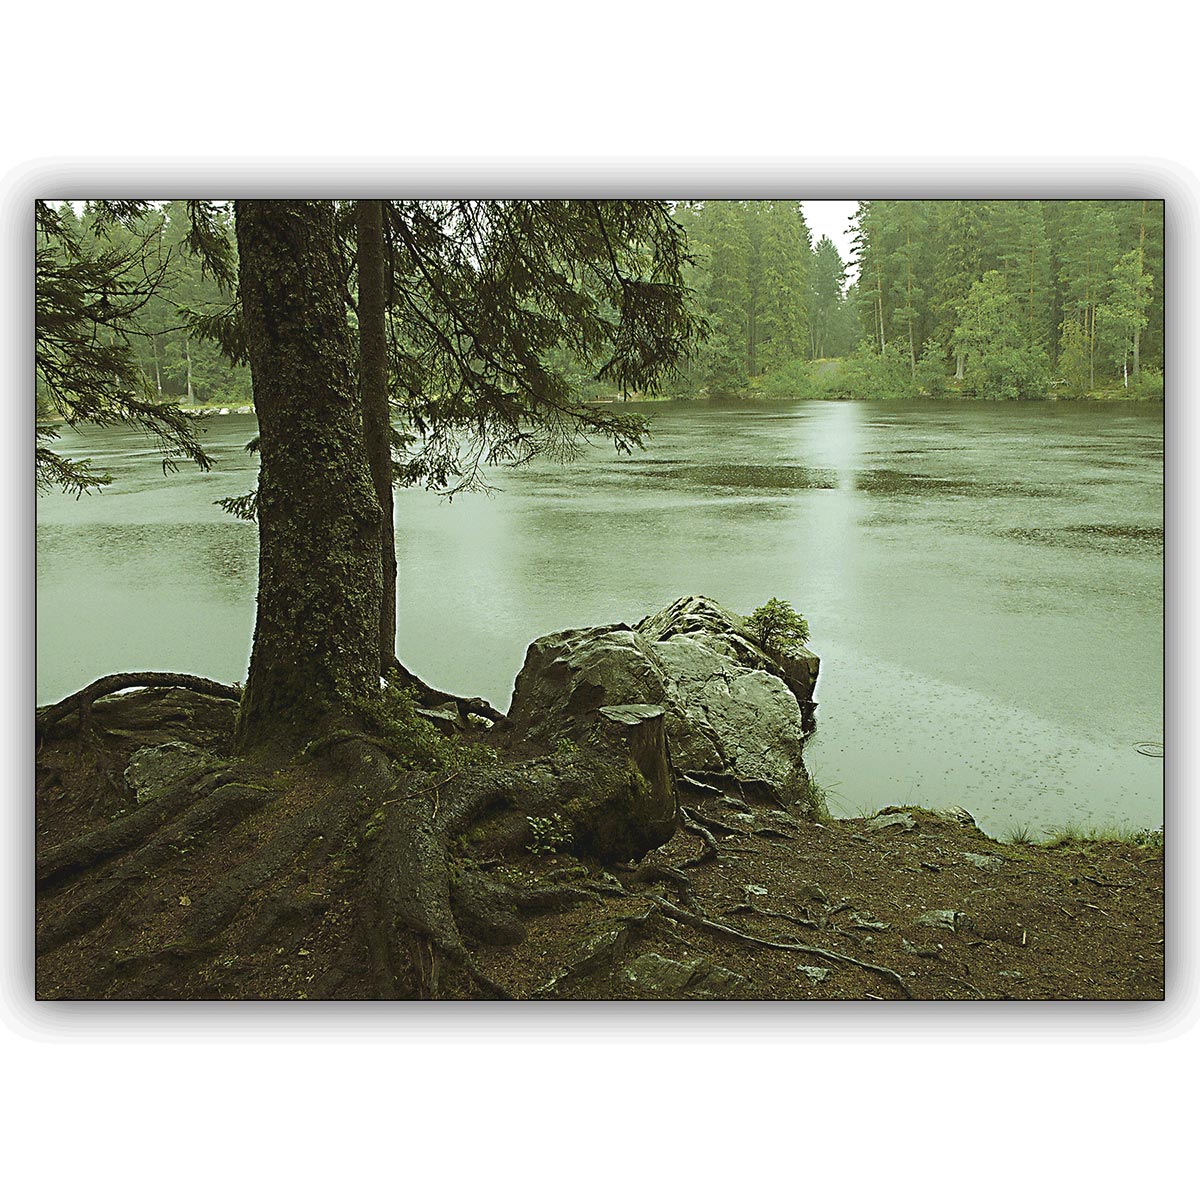 Herbstliche Fotokunst Landschafts Klappkarte: Der Regen im Wald